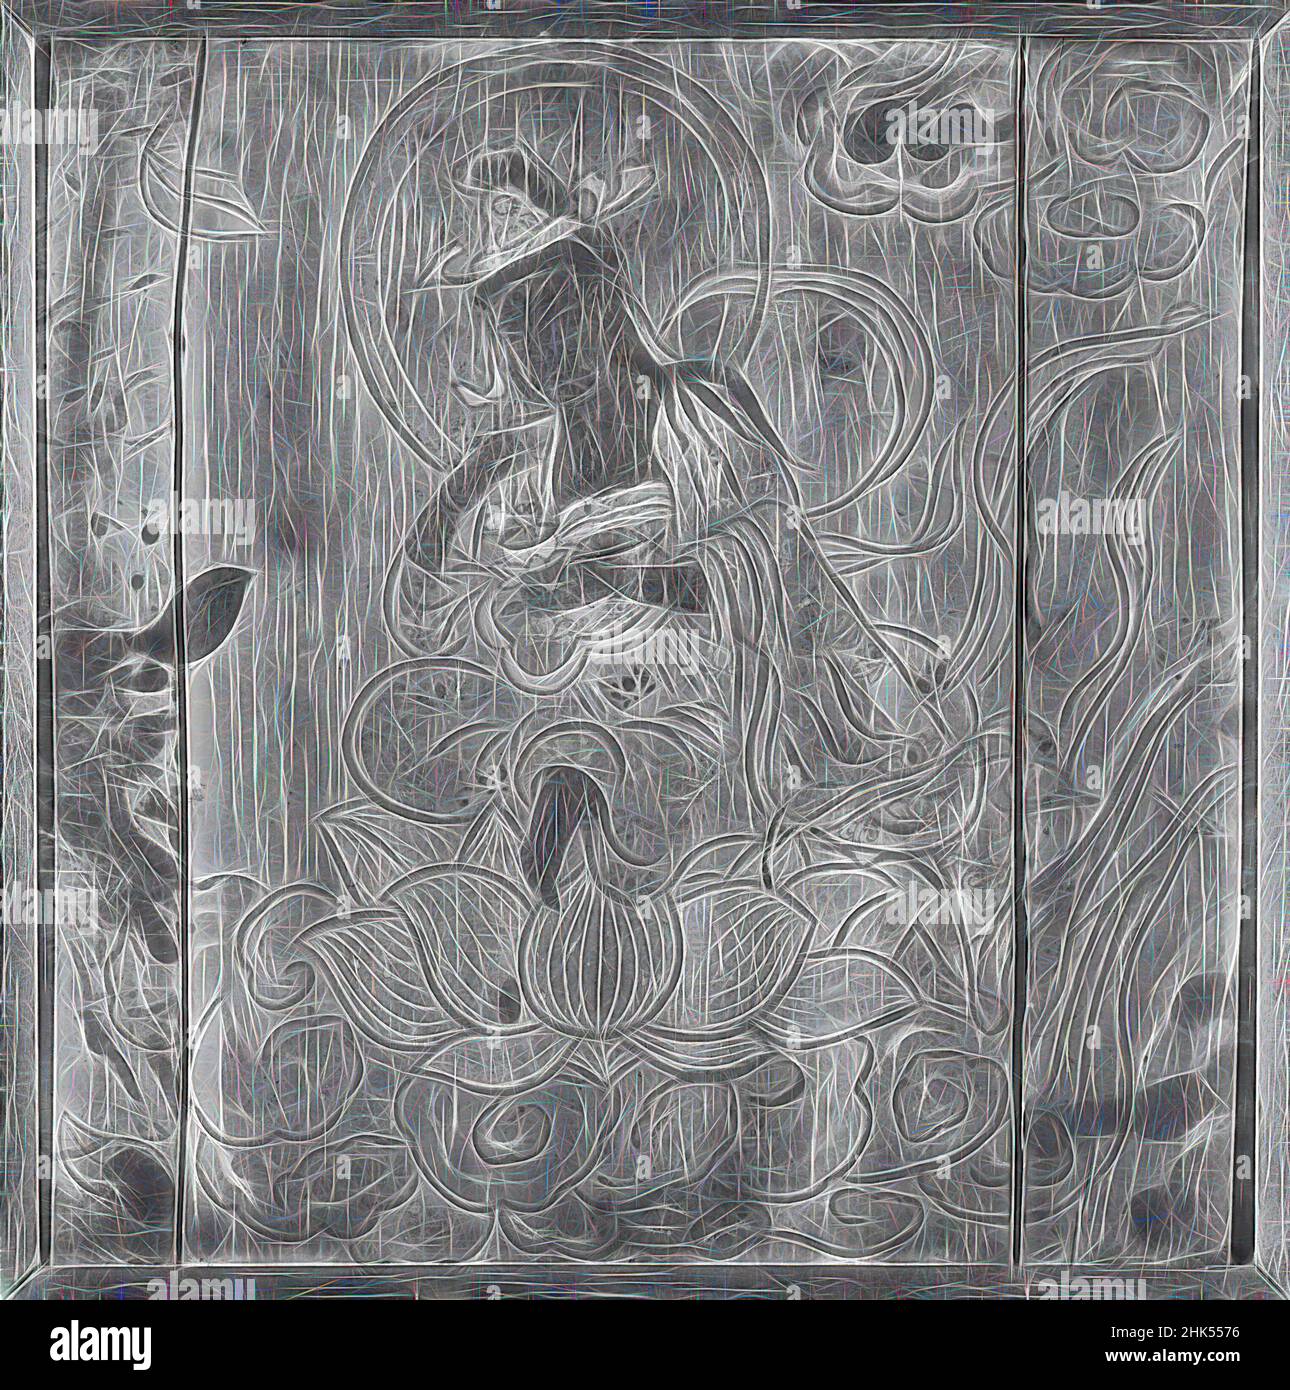 Inspiriert von Kannon, Avalokiteshvara, Tinte und Farbe auf Zypressenholz, Japan, 18th-19th Jahrhundert, Edo-Zeit, 25 x 25 Zoll, 63,5 x 63,5 cm, neu erfunden von Artotop. Klassische Kunst neu erfunden mit einem modernen Twist. Design von warmen fröhlichen Leuchten der Helligkeit und Lichtstrahl Strahlkraft. Fotografie inspiriert von Surrealismus und Futurismus, umarmt dynamische Energie der modernen Technologie, Bewegung, Geschwindigkeit und Kultur zu revolutionieren Stockfoto